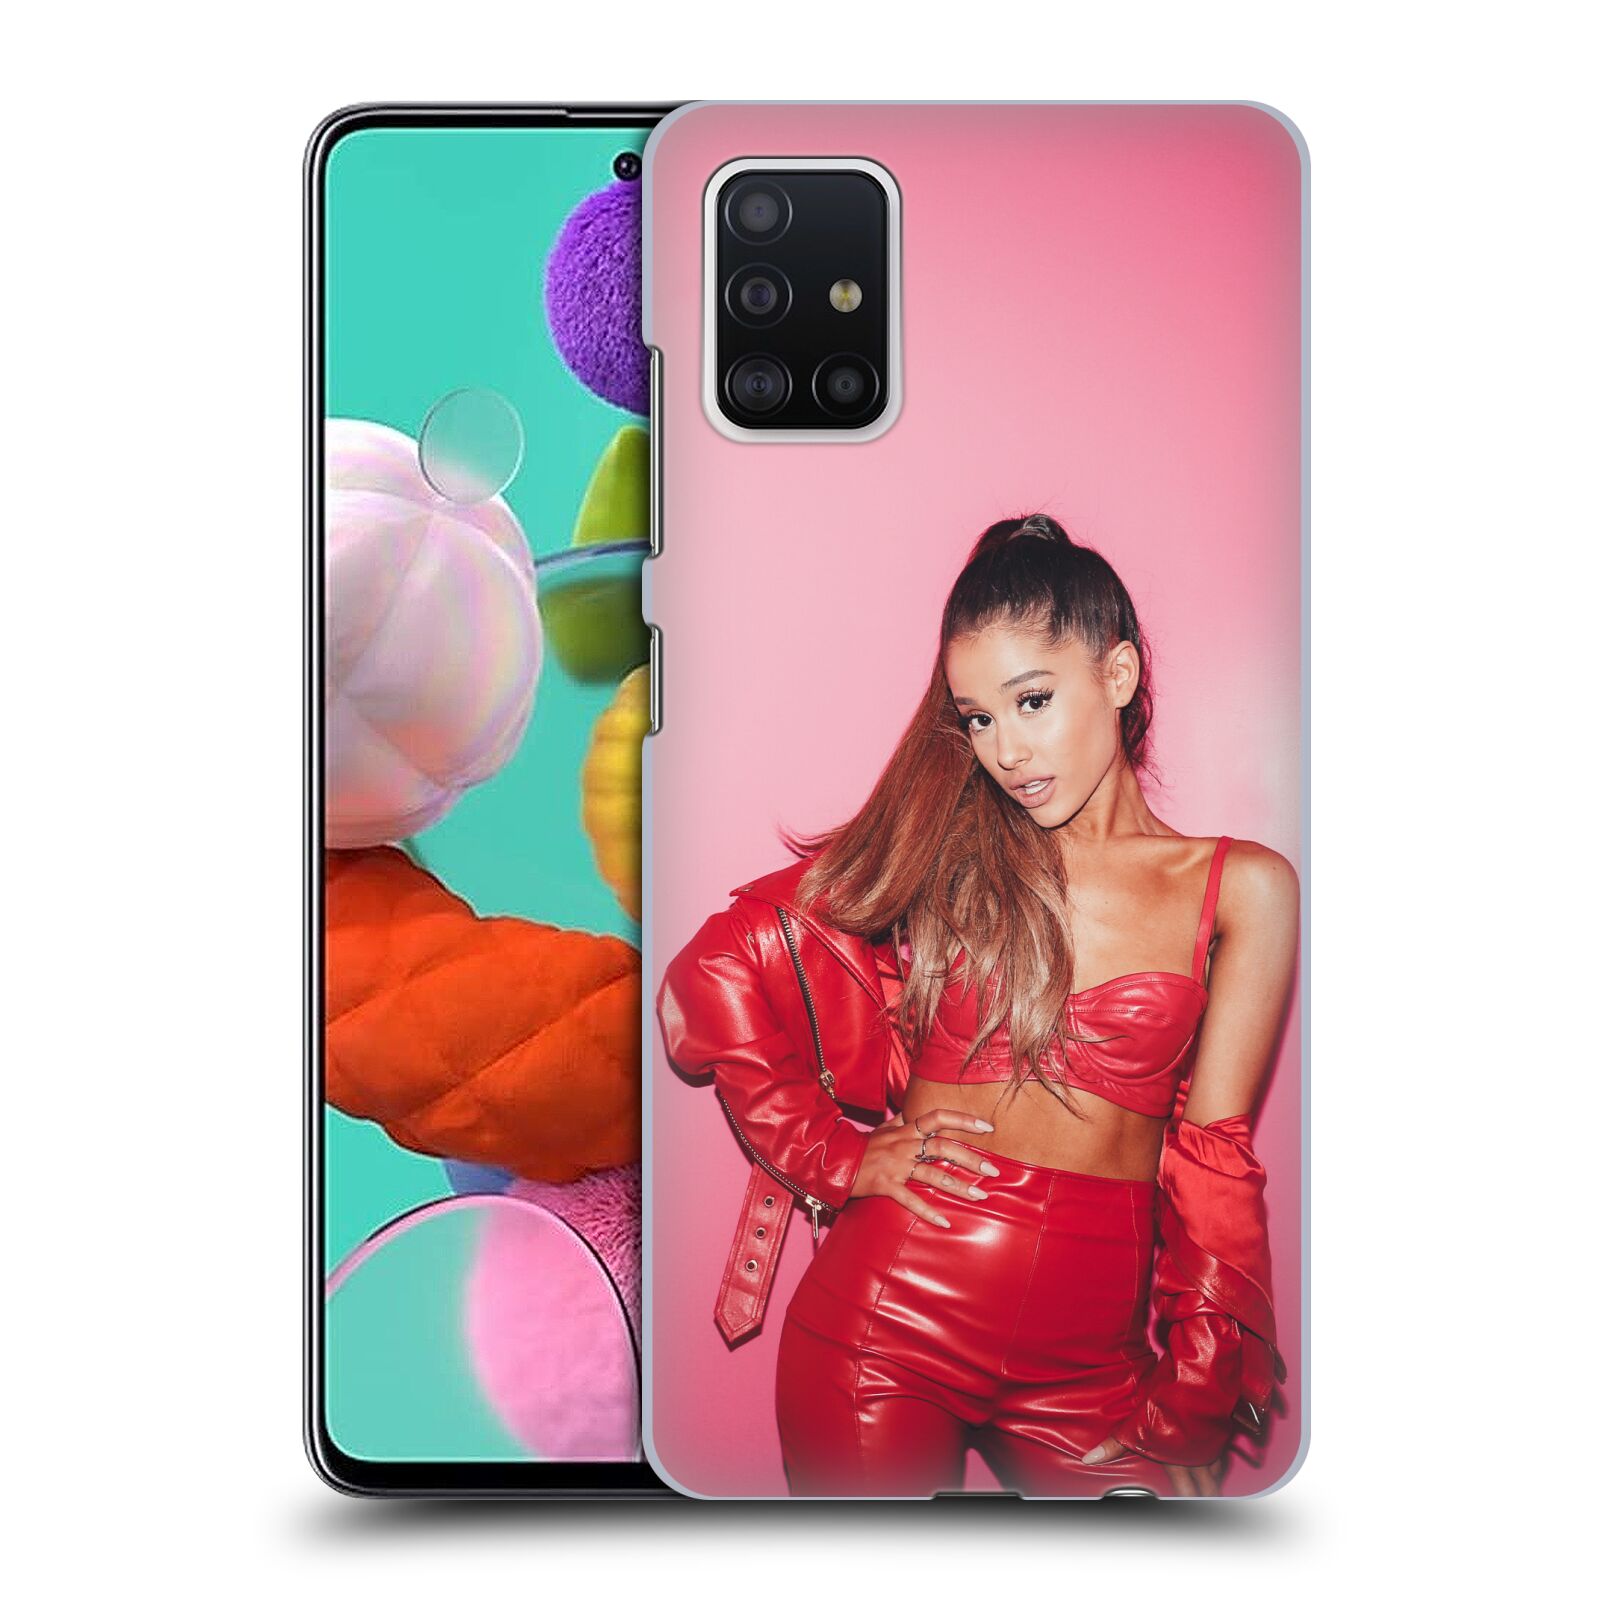 Pouzdro na mobil Samsung Galaxy A51 - HEAD CASE - zpěvačka Ariana Grande Dangerous Woman růžová